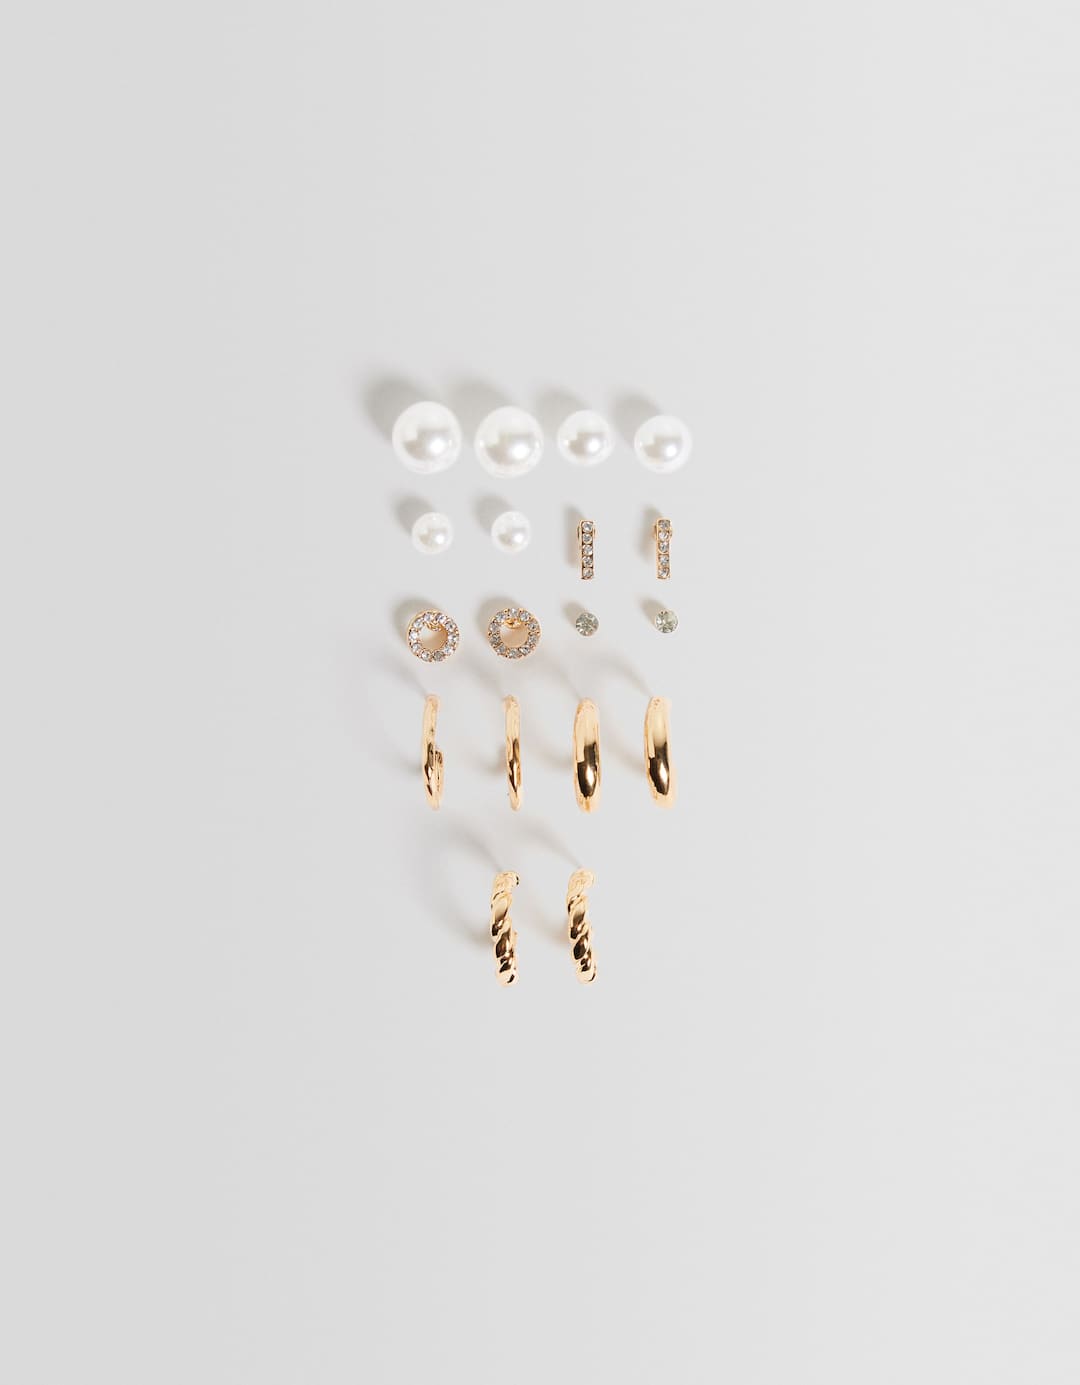 Set of 9 hoop earrings with faux pearls